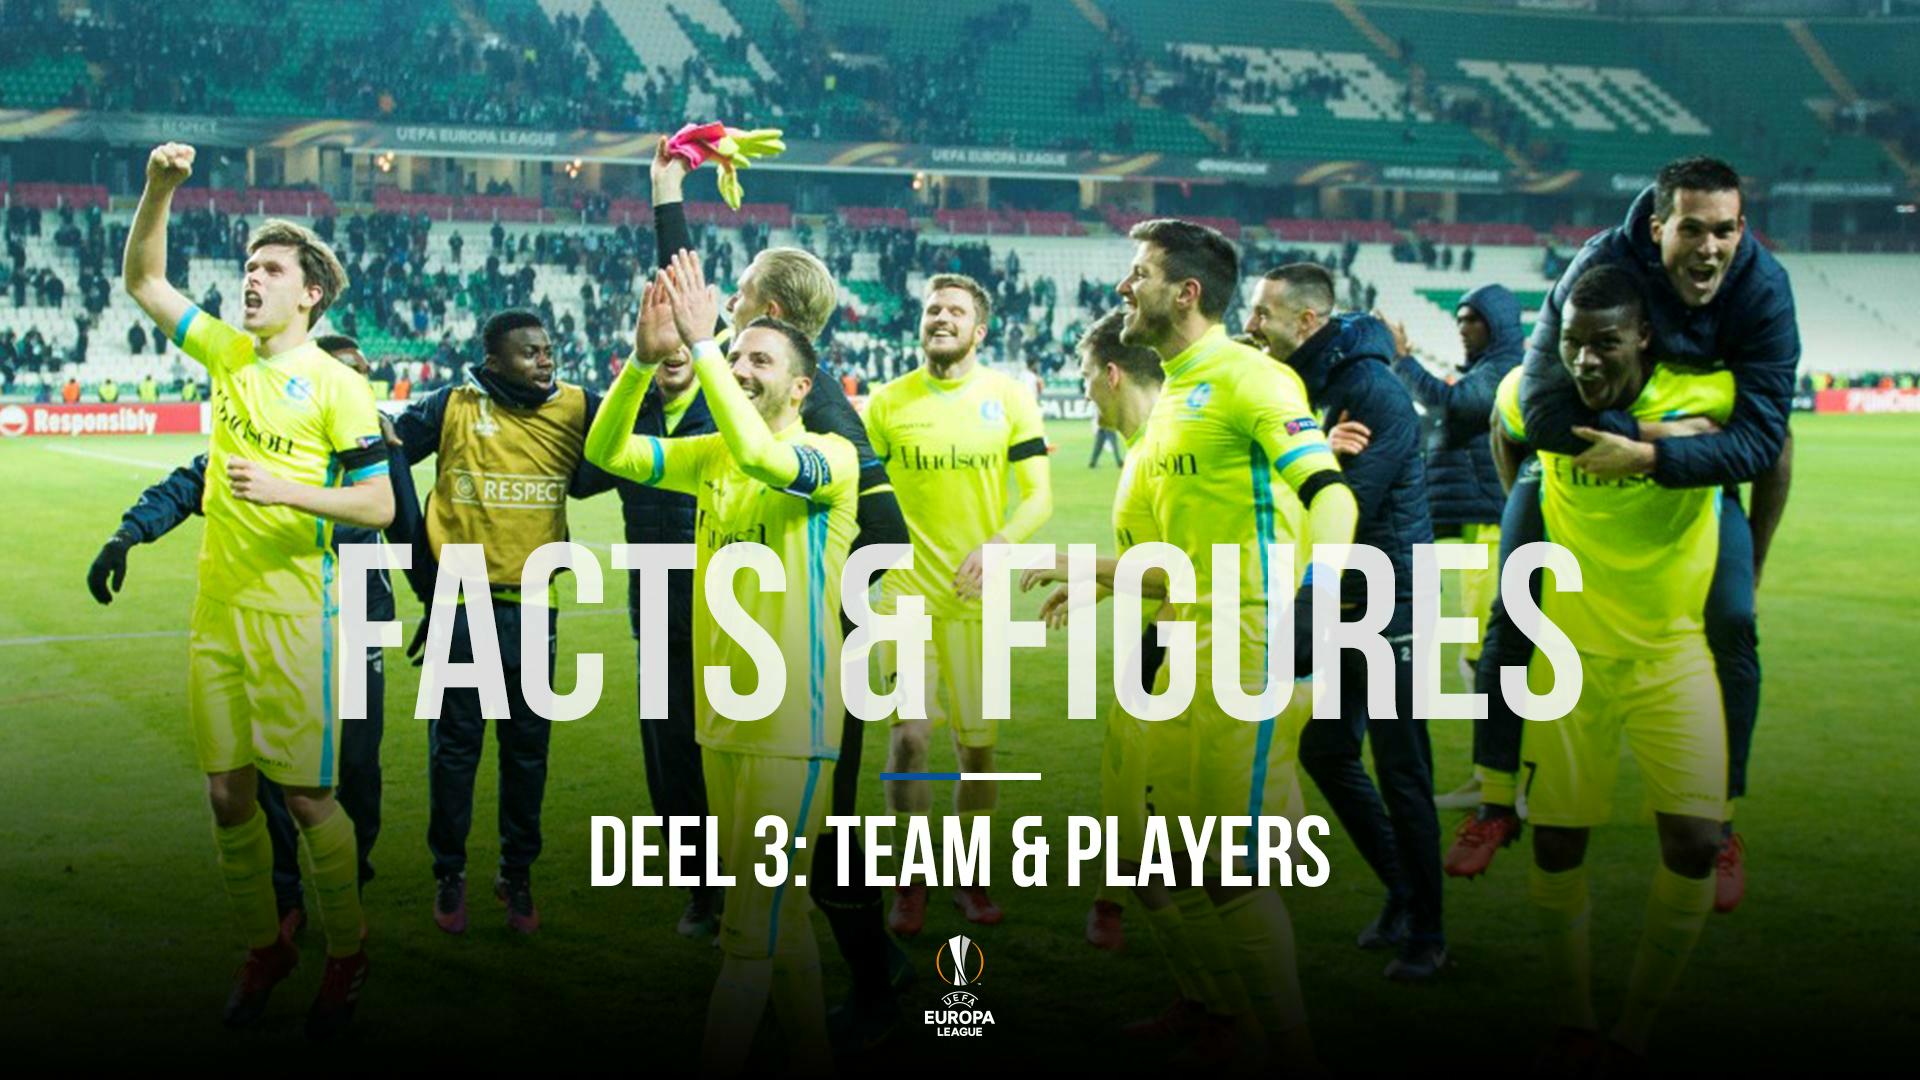 KAA Gent - Tottenham: Facts & Figures (deel 3)